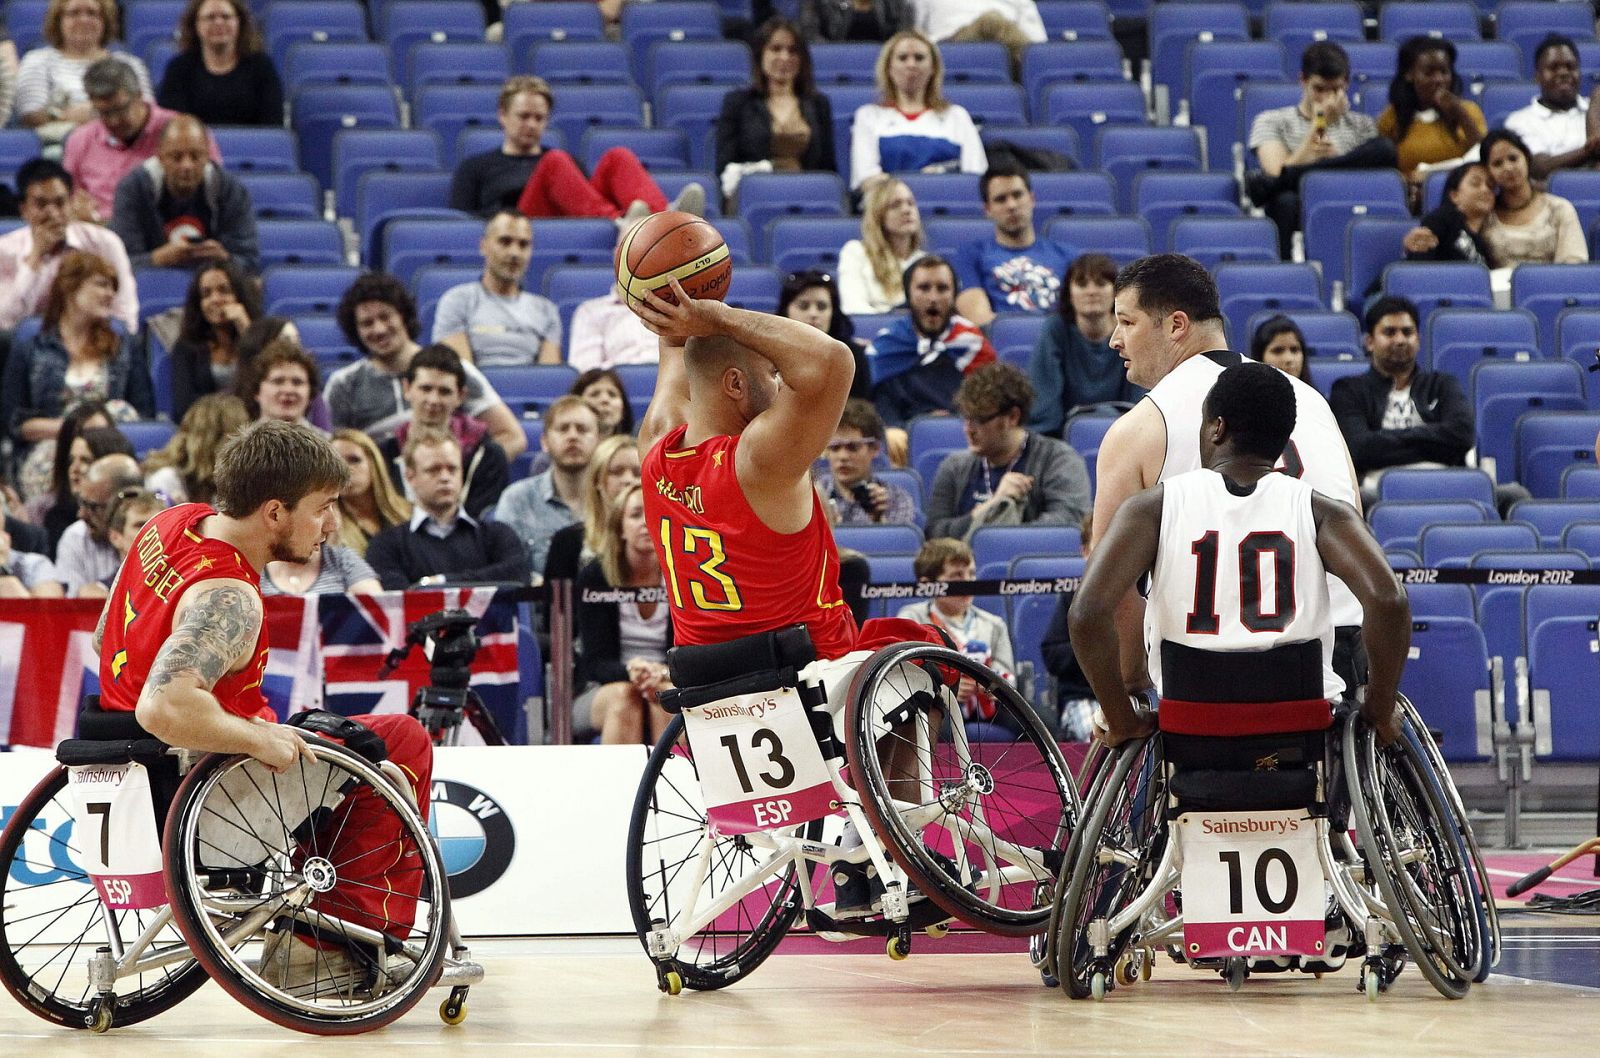 Juegos Paralímpicos baloncesto: España - Canadá Londres 2012